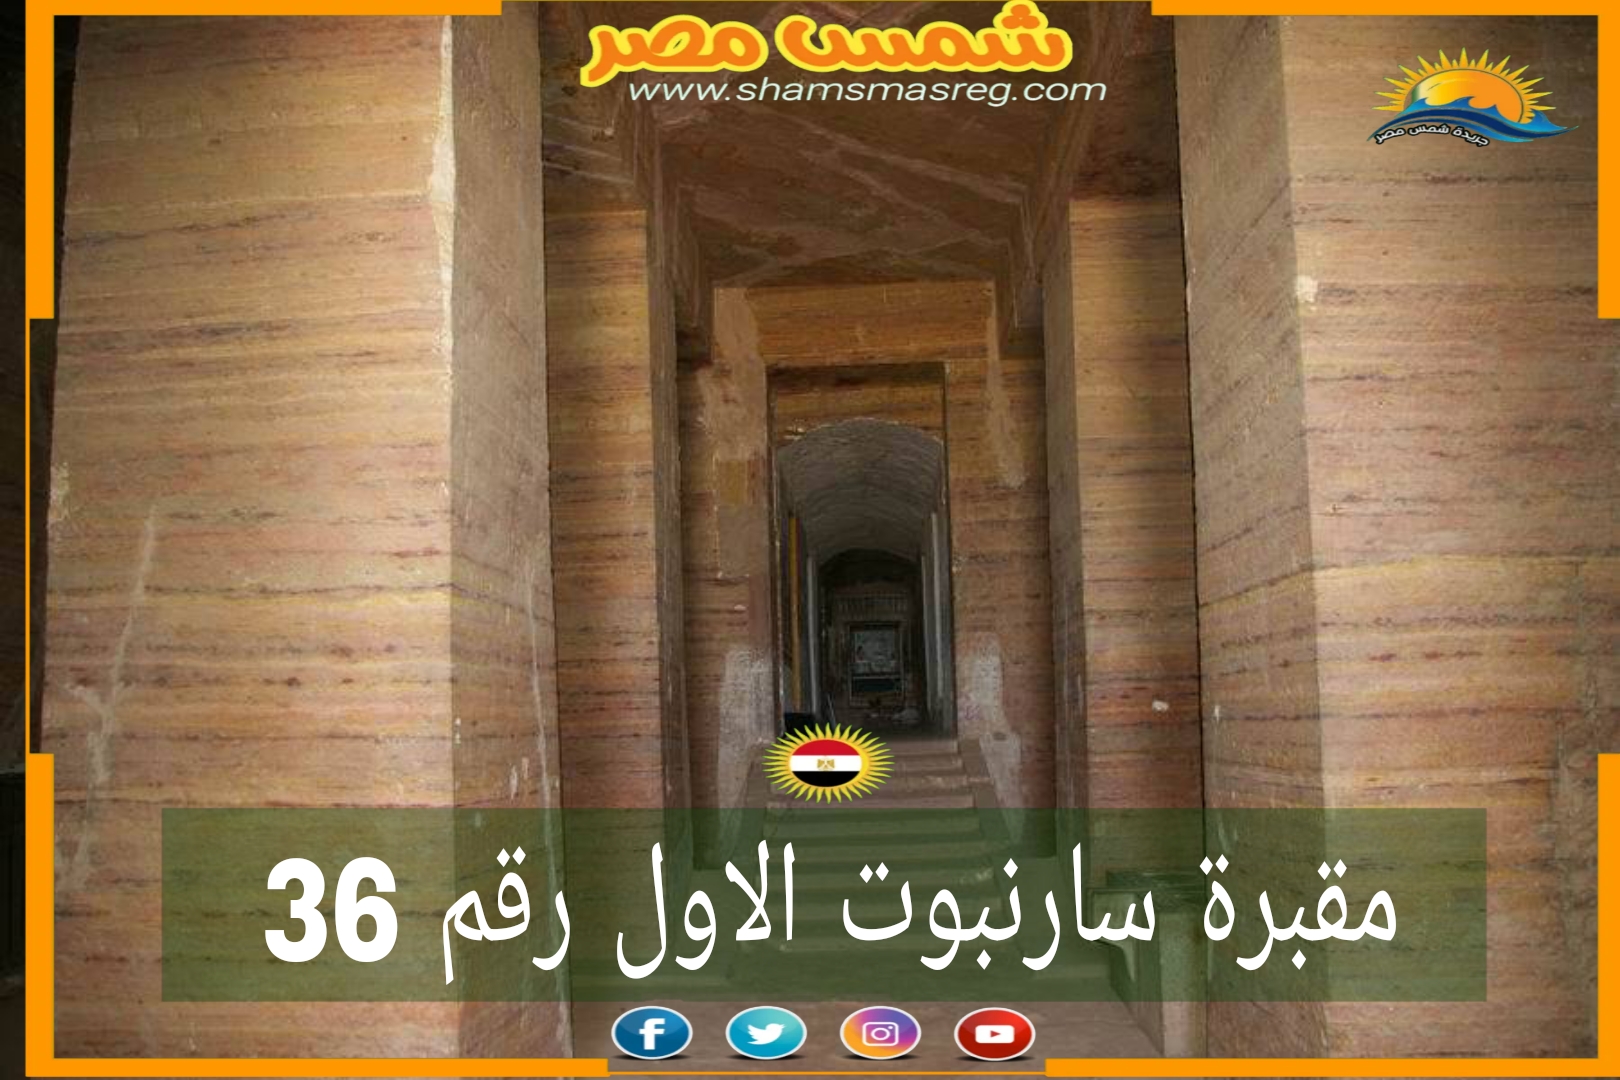 شمس مصر/ مقبرة سارنبوت الاول رقم 36